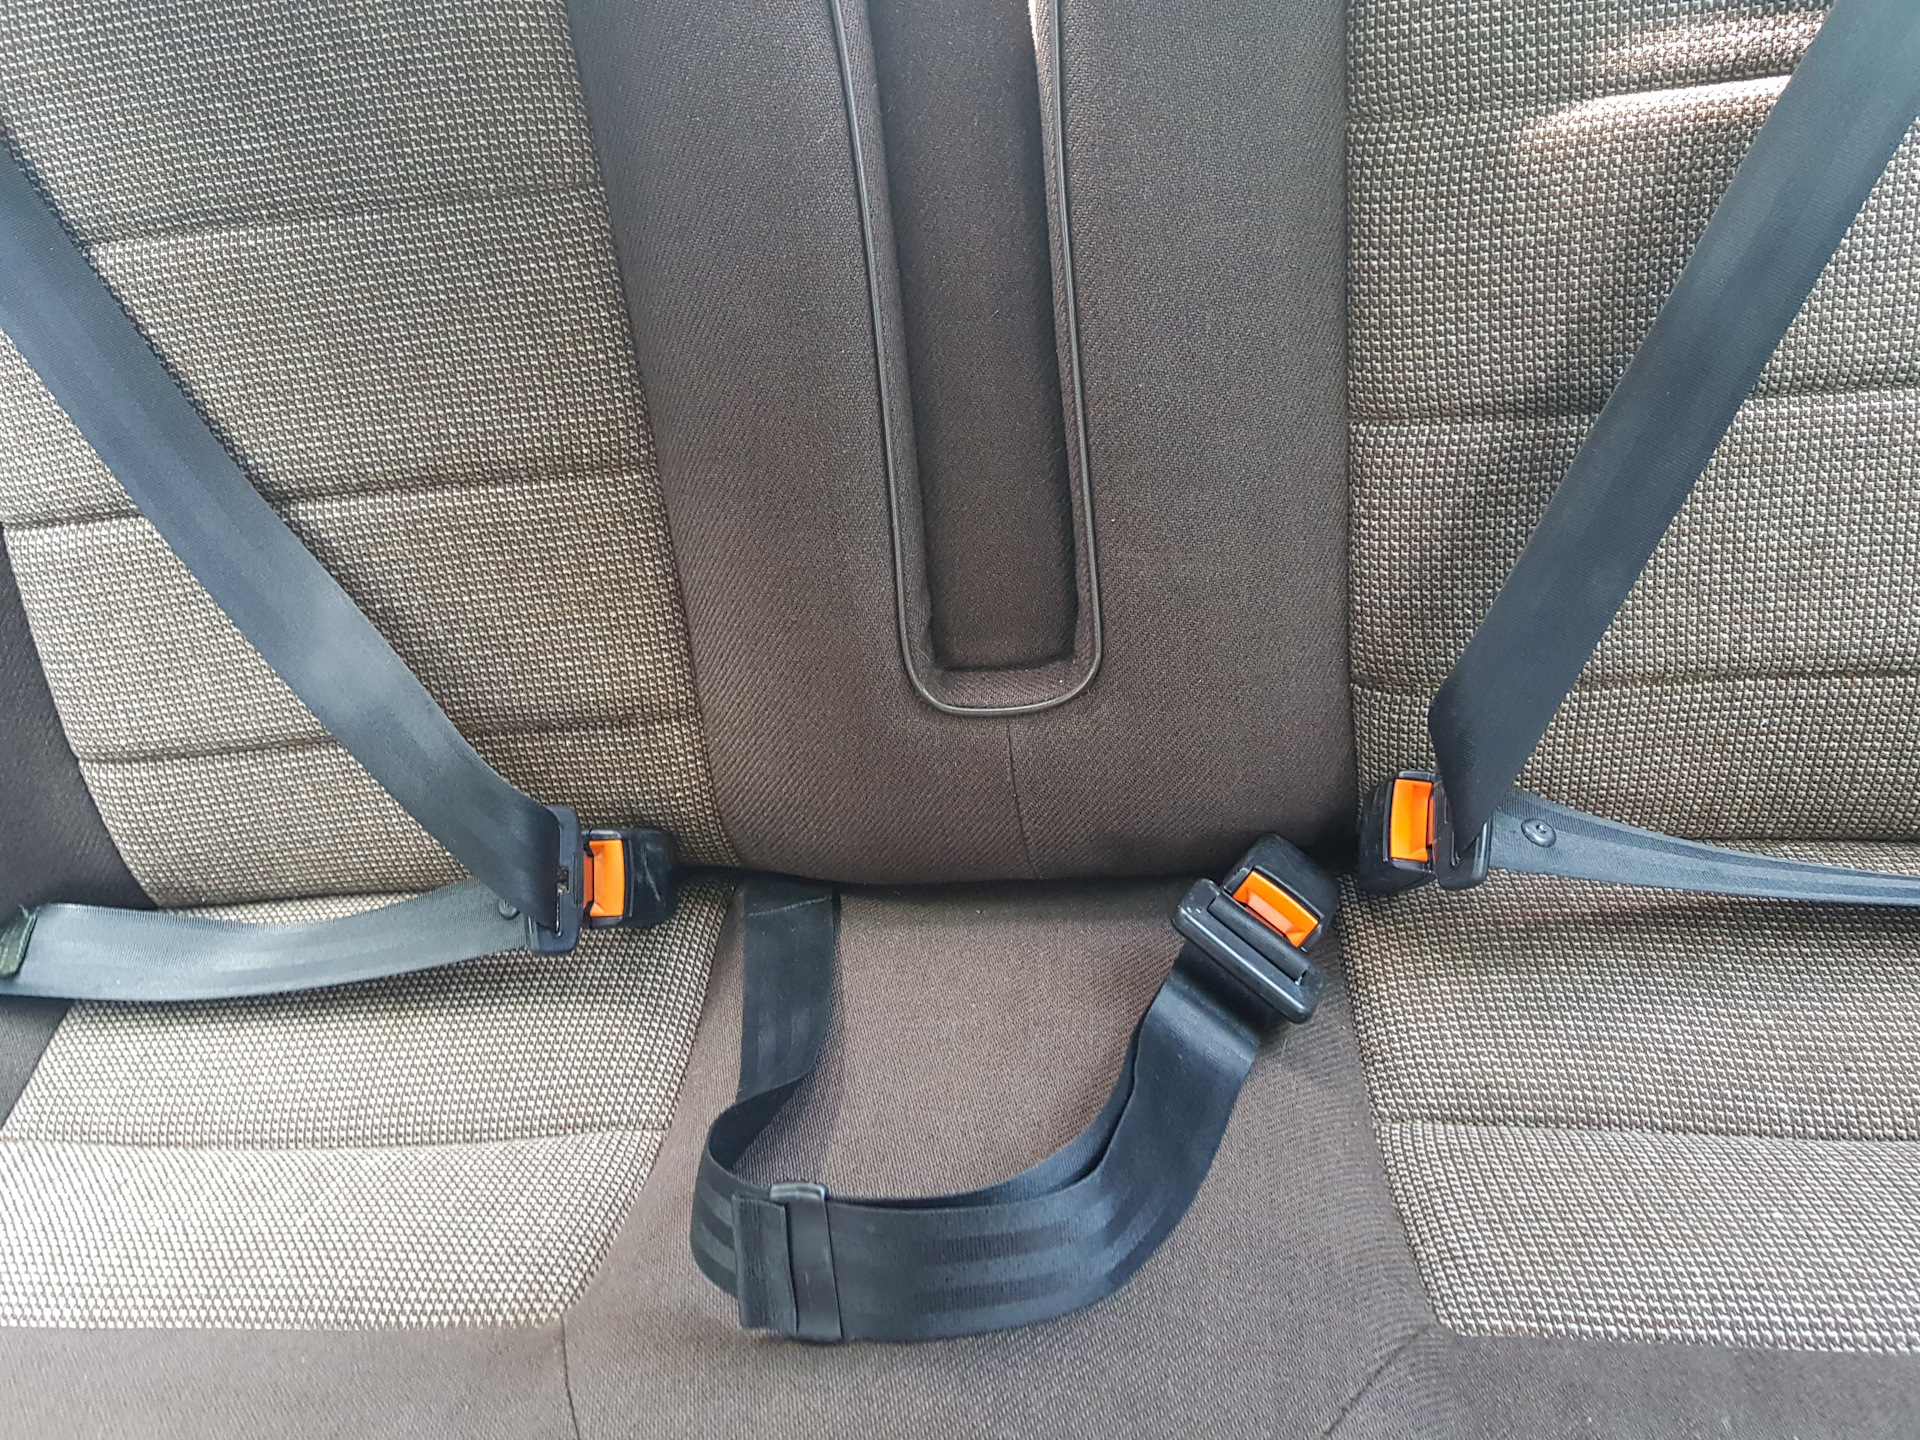 Ремень безопасности передних сидений. Ремни безопасности ГАЗ 31105.